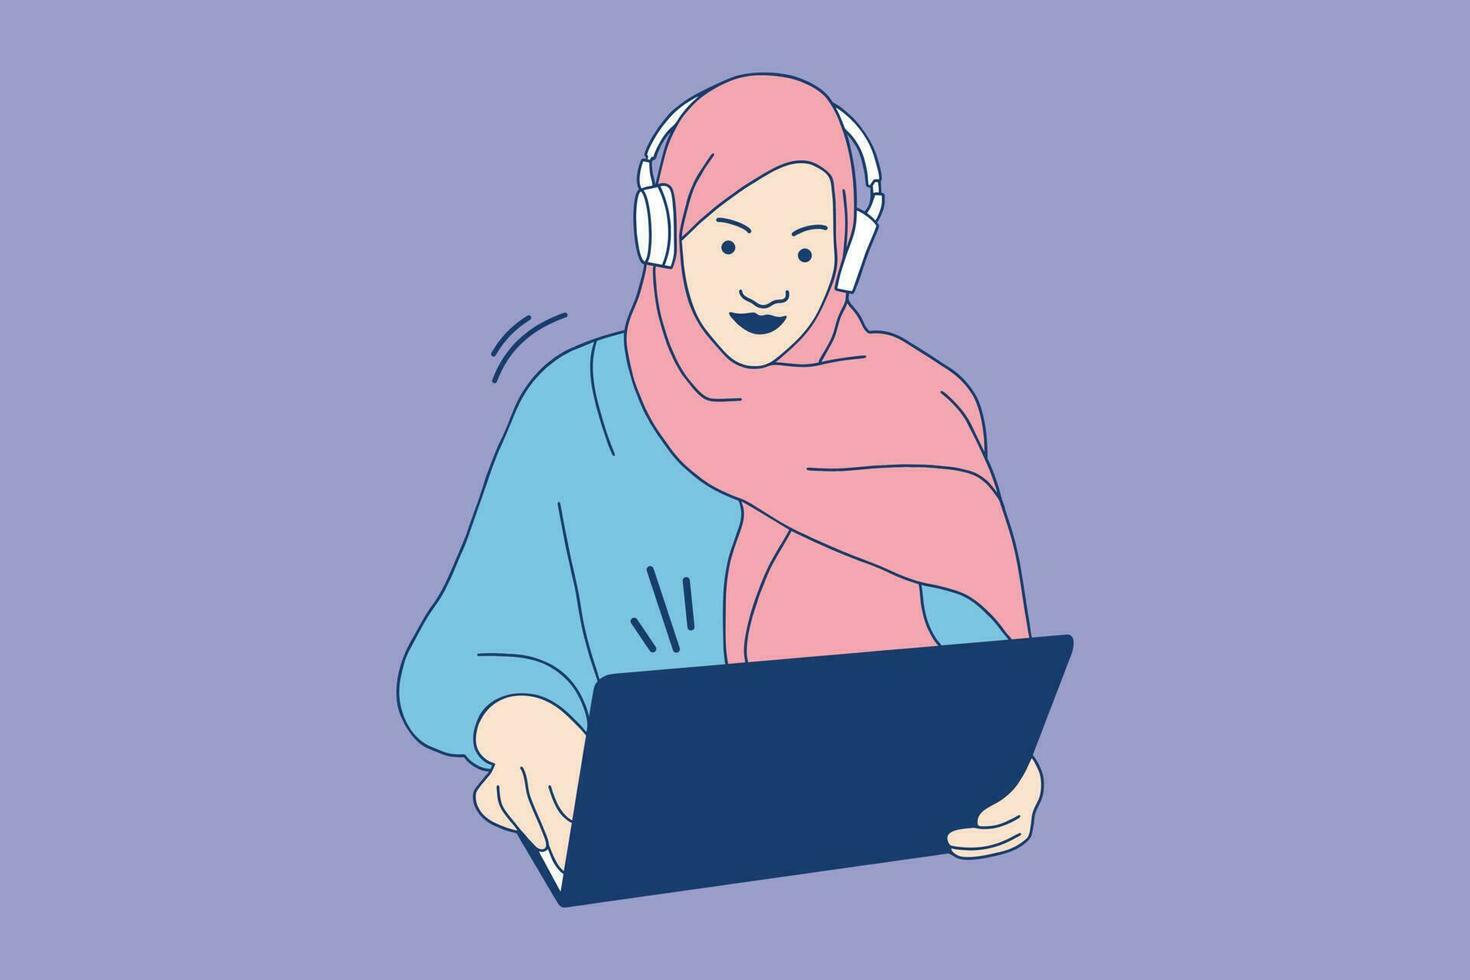 illustrationer av skön ung kund service muslim flicka med en headsetet på henne arbetsplats vektor